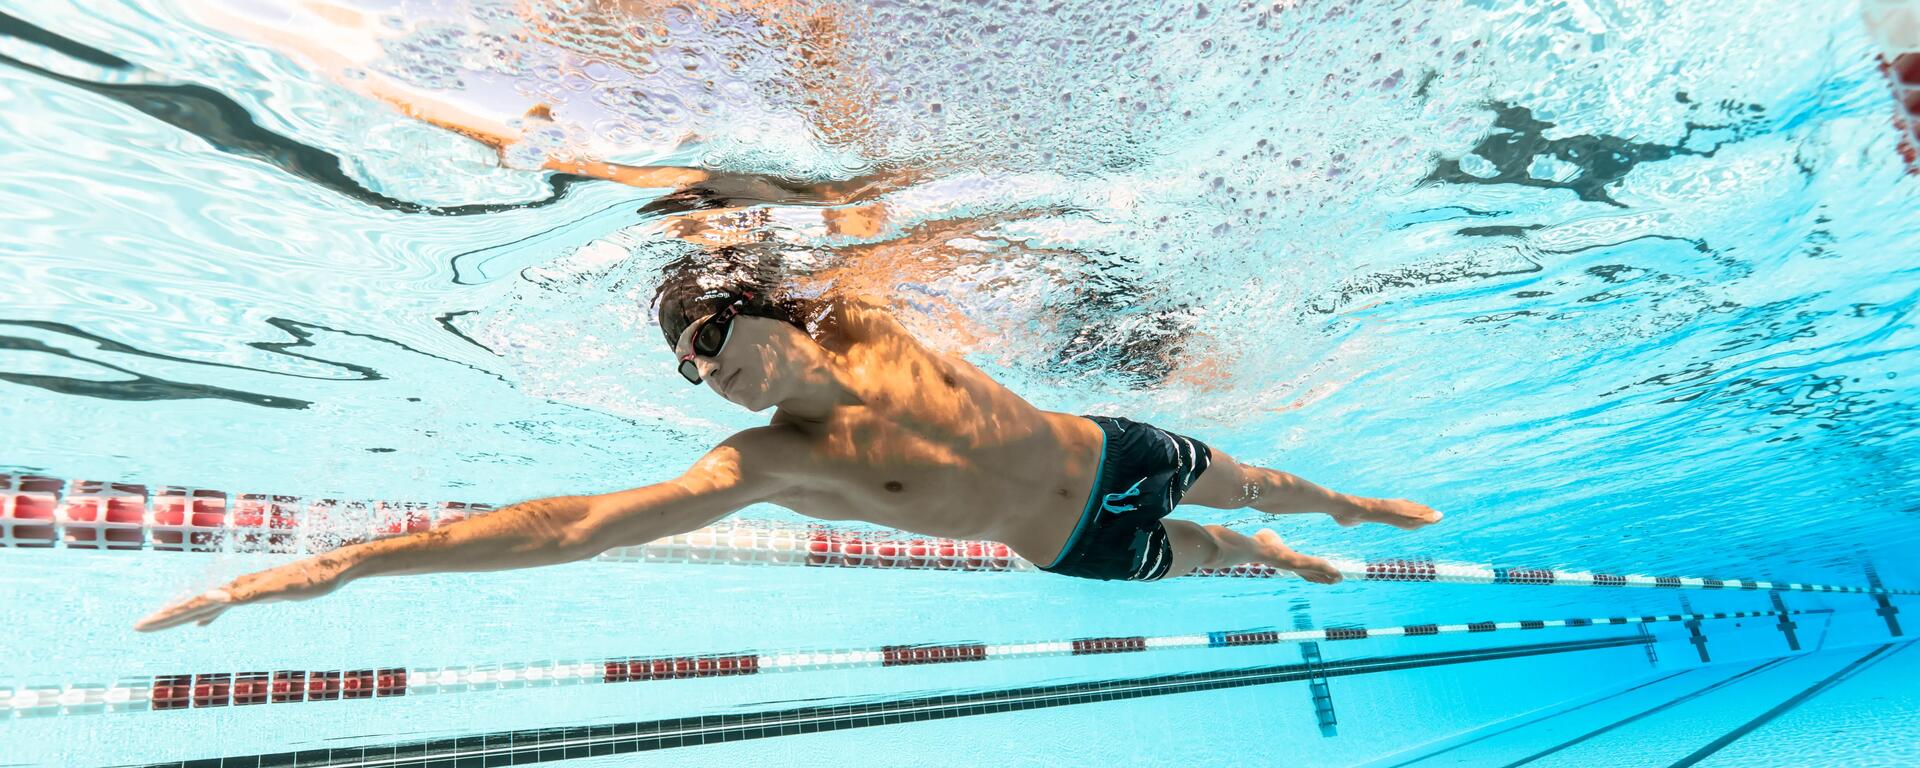 10-tips-om-moeiteloos-te-zwemmen